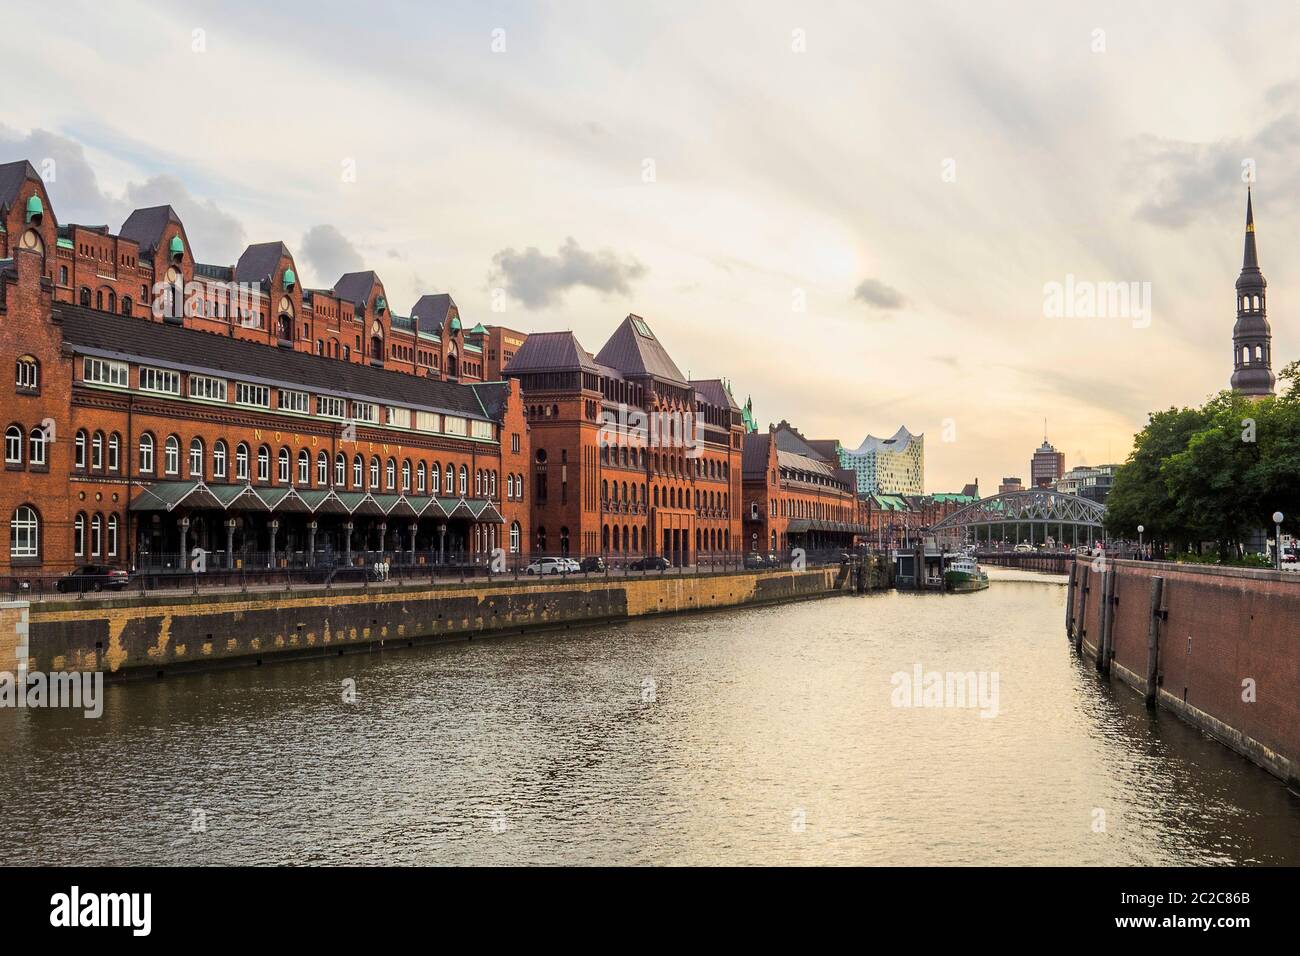 Germania, città anseatica libera di Amburgo - flotte nello Speicherstadt Foto Stock